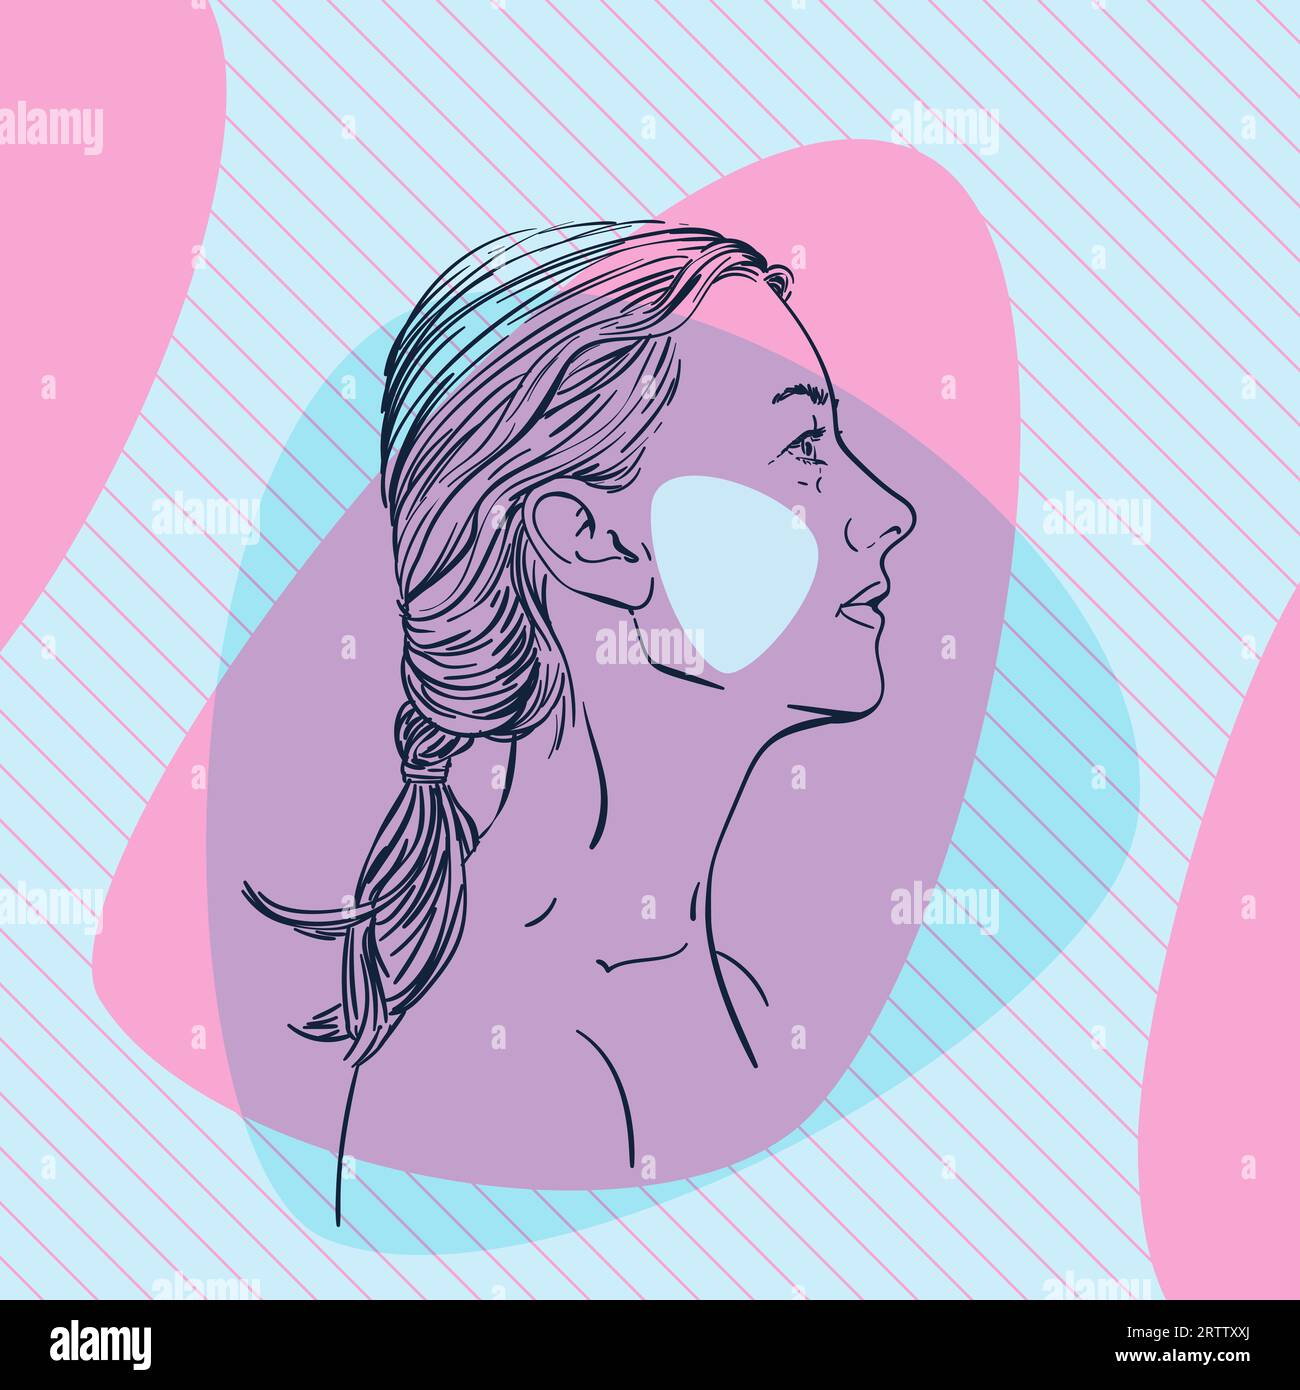 Croquis de la tête de femme de profil avec joue colorée sur des formes rationalisées abstraites de couleur bleue et rose sur fond carré rayé diagonal, Vector Illustration de Vecteur